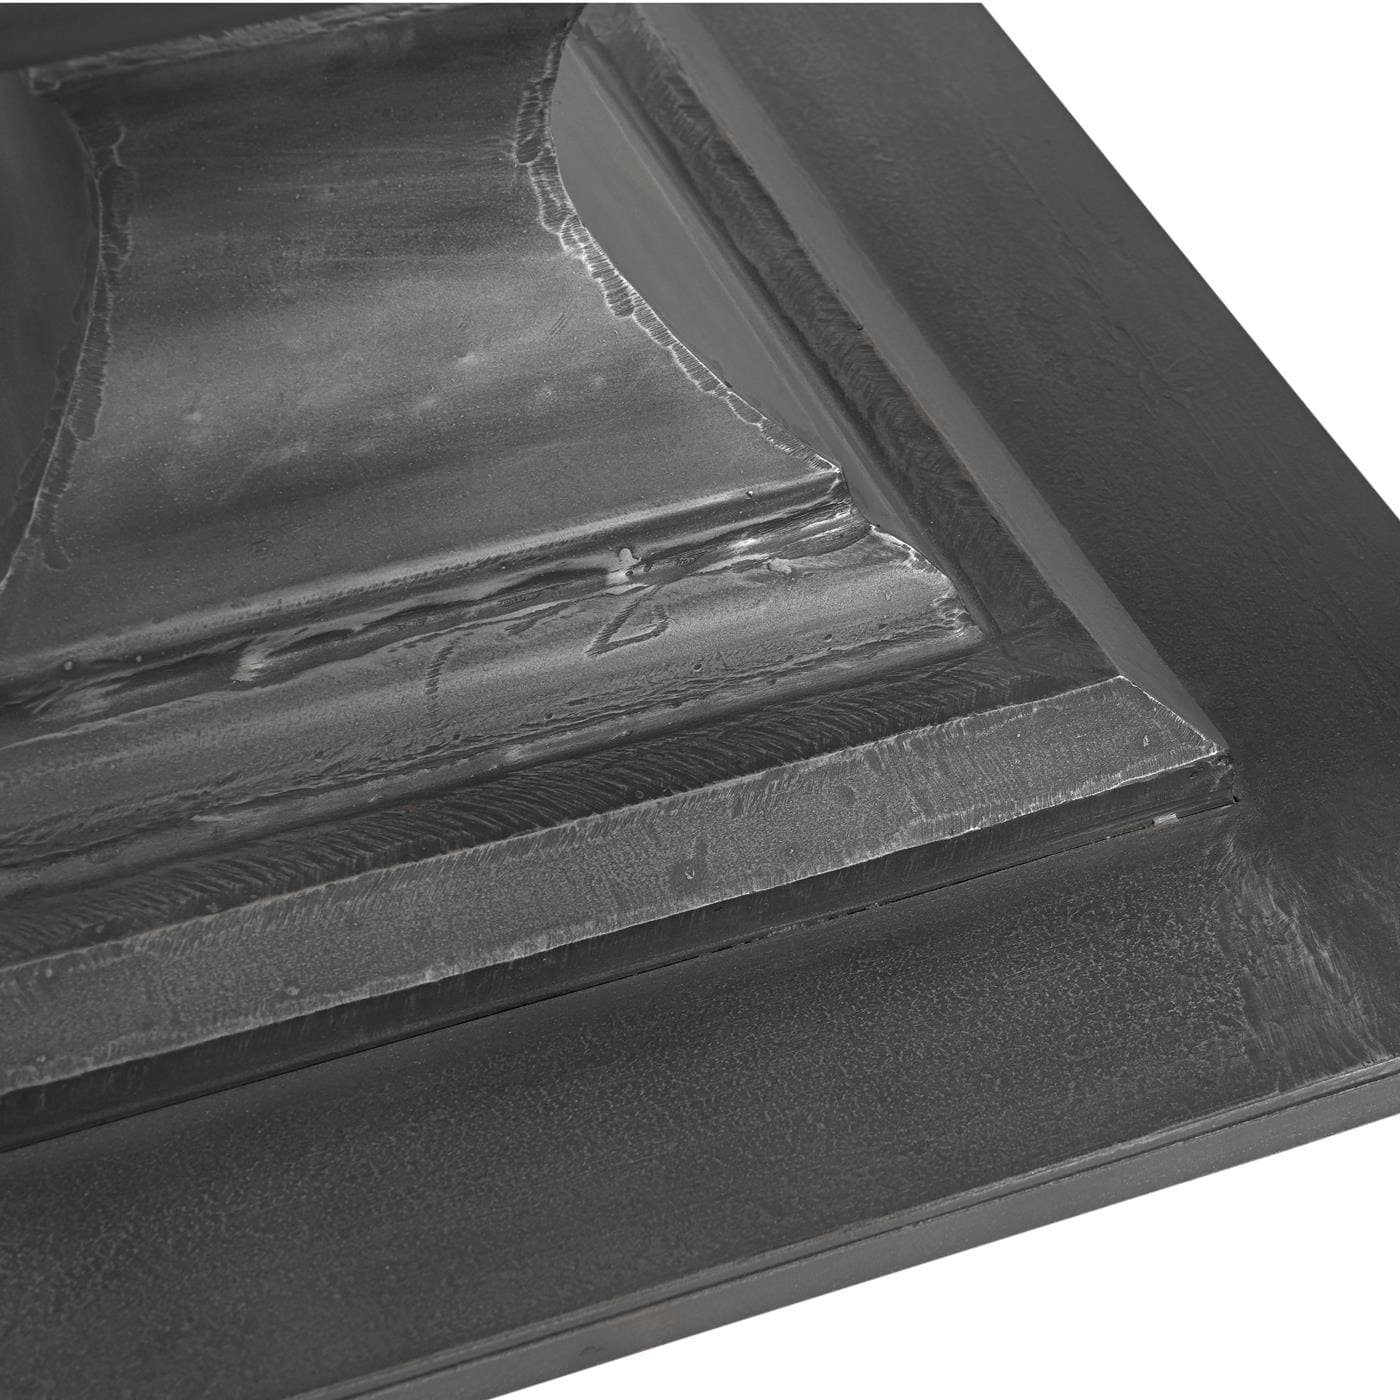 LIVNO Antik baario Tischgestell schwarz, Eisen Metall Tischbein grau Tischfuß Esstisch geschmiedet